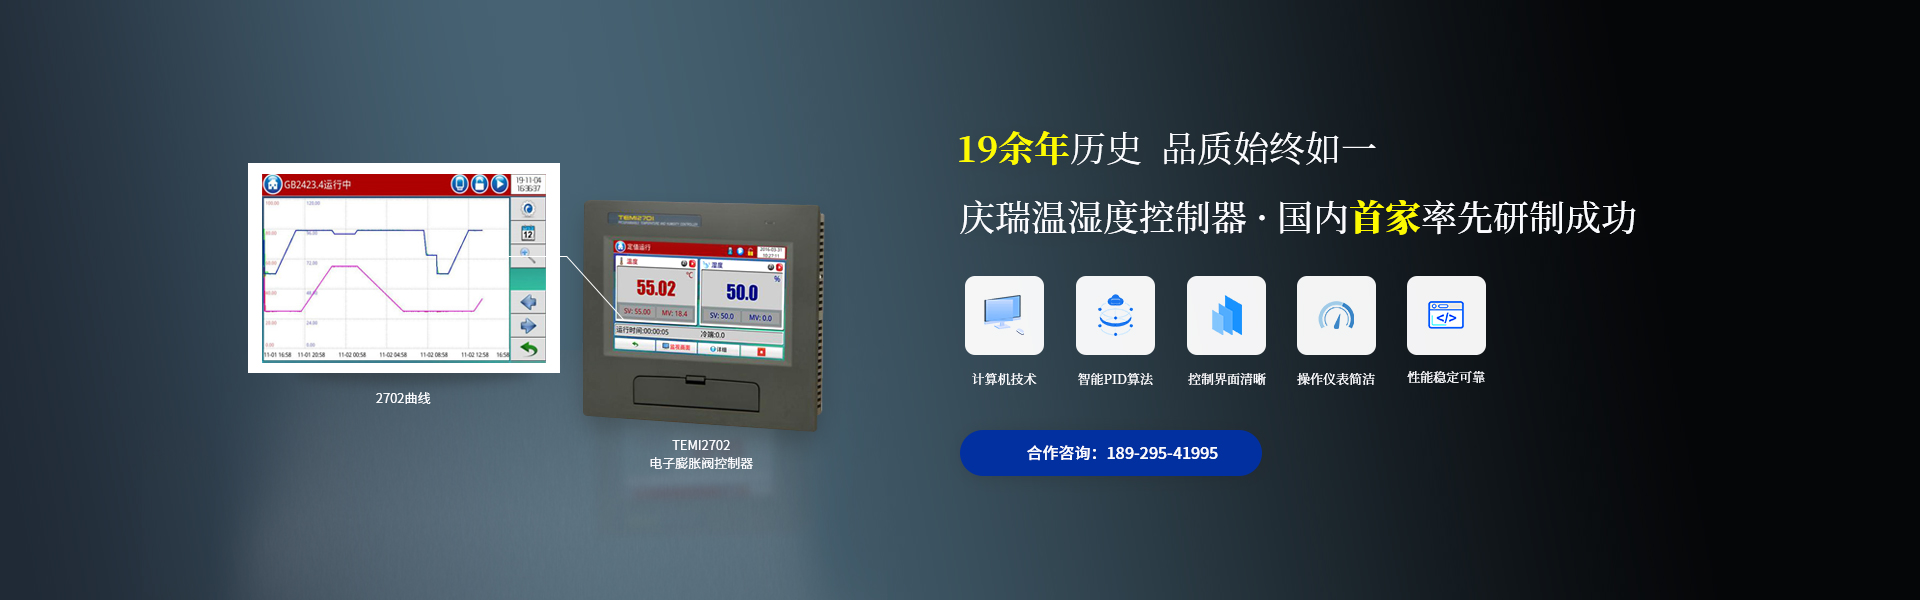 广州庆瑞电子温湿度控制器,19余年品质始终如一